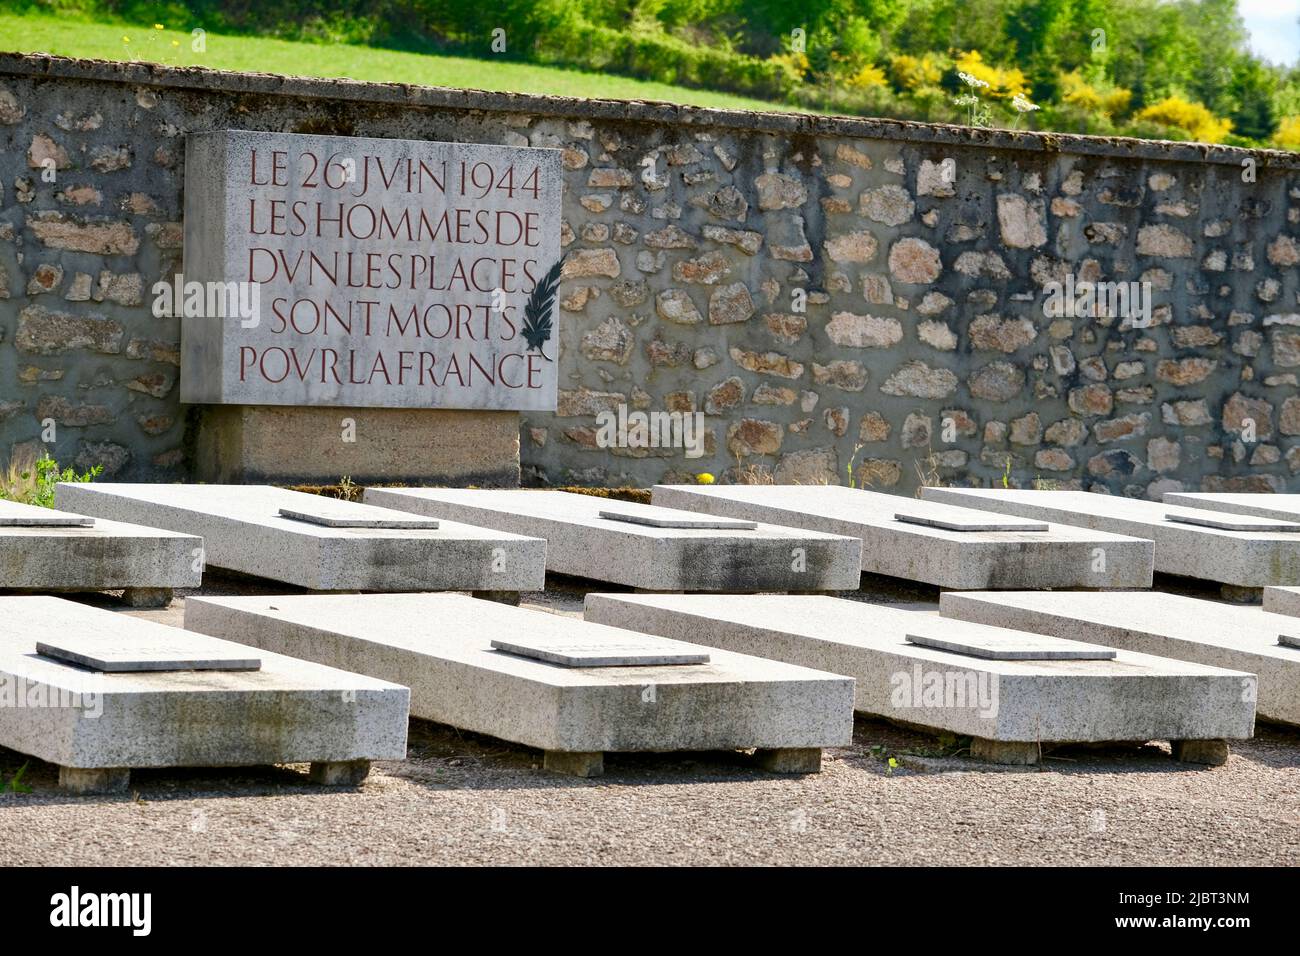 Frankreich, Nievre, regionaler Naturpark Morvan, Dun les Places, das von den Deutschen am 24., 25. Und 26. Juni ermordete Dorf der Befreiung von 1944, in dem 27 Zivilisten getötet wurden Stockfoto